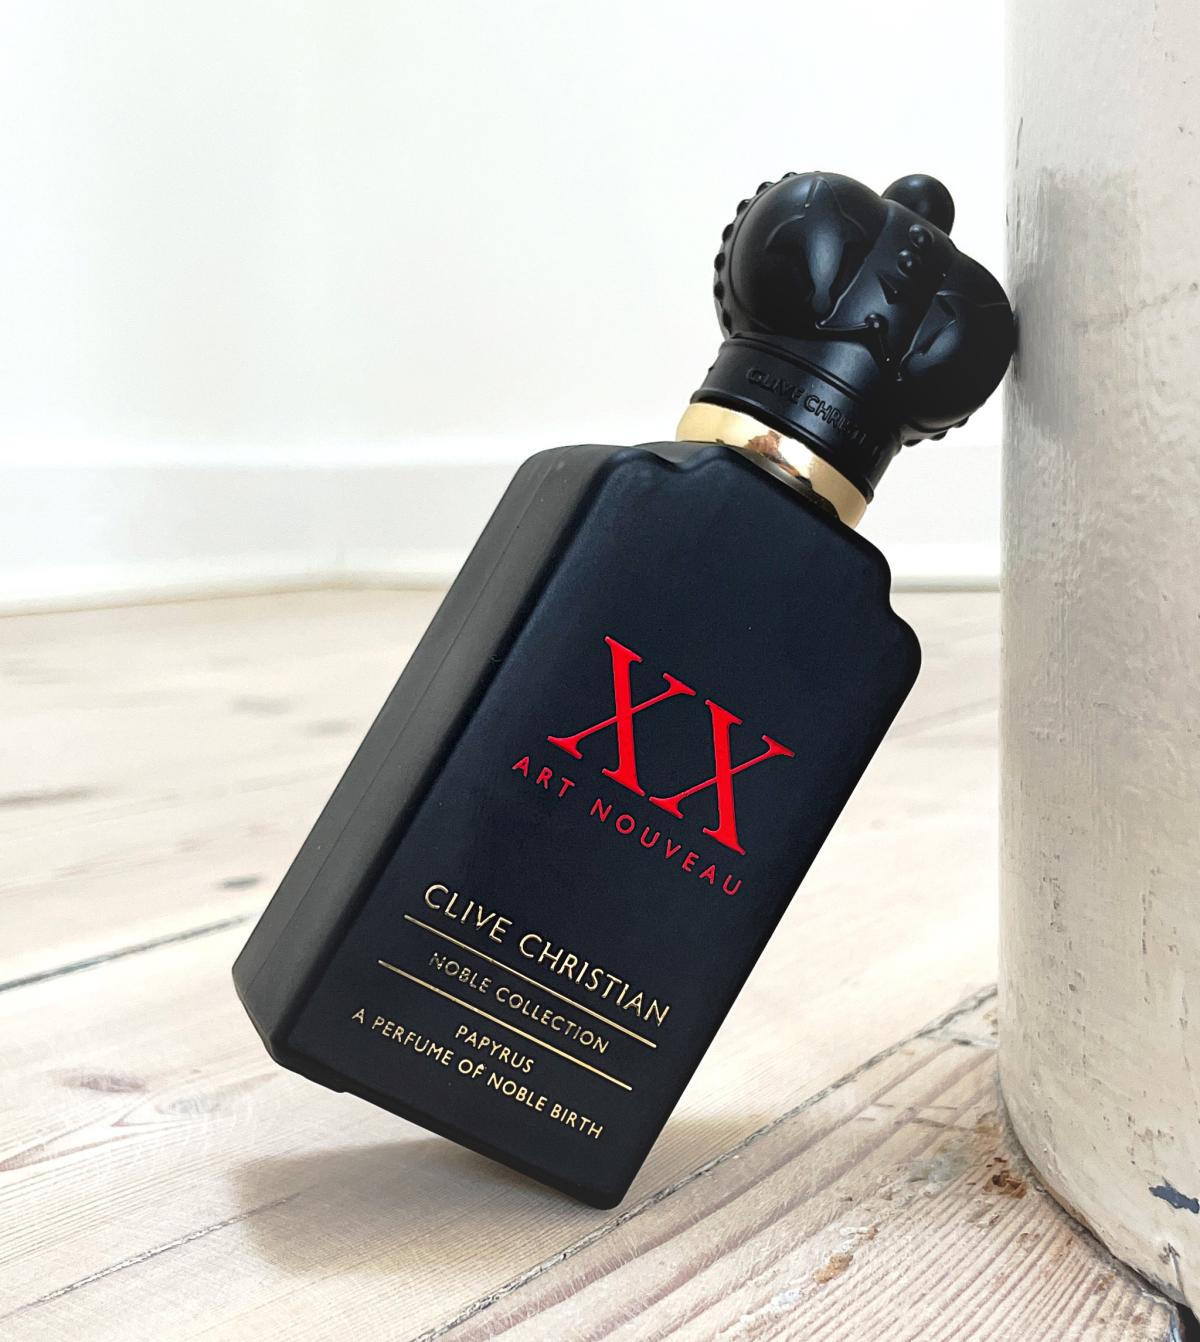 XX Art Nouveau Papyrus Clive Christian cologne - a fragrance for men 2018